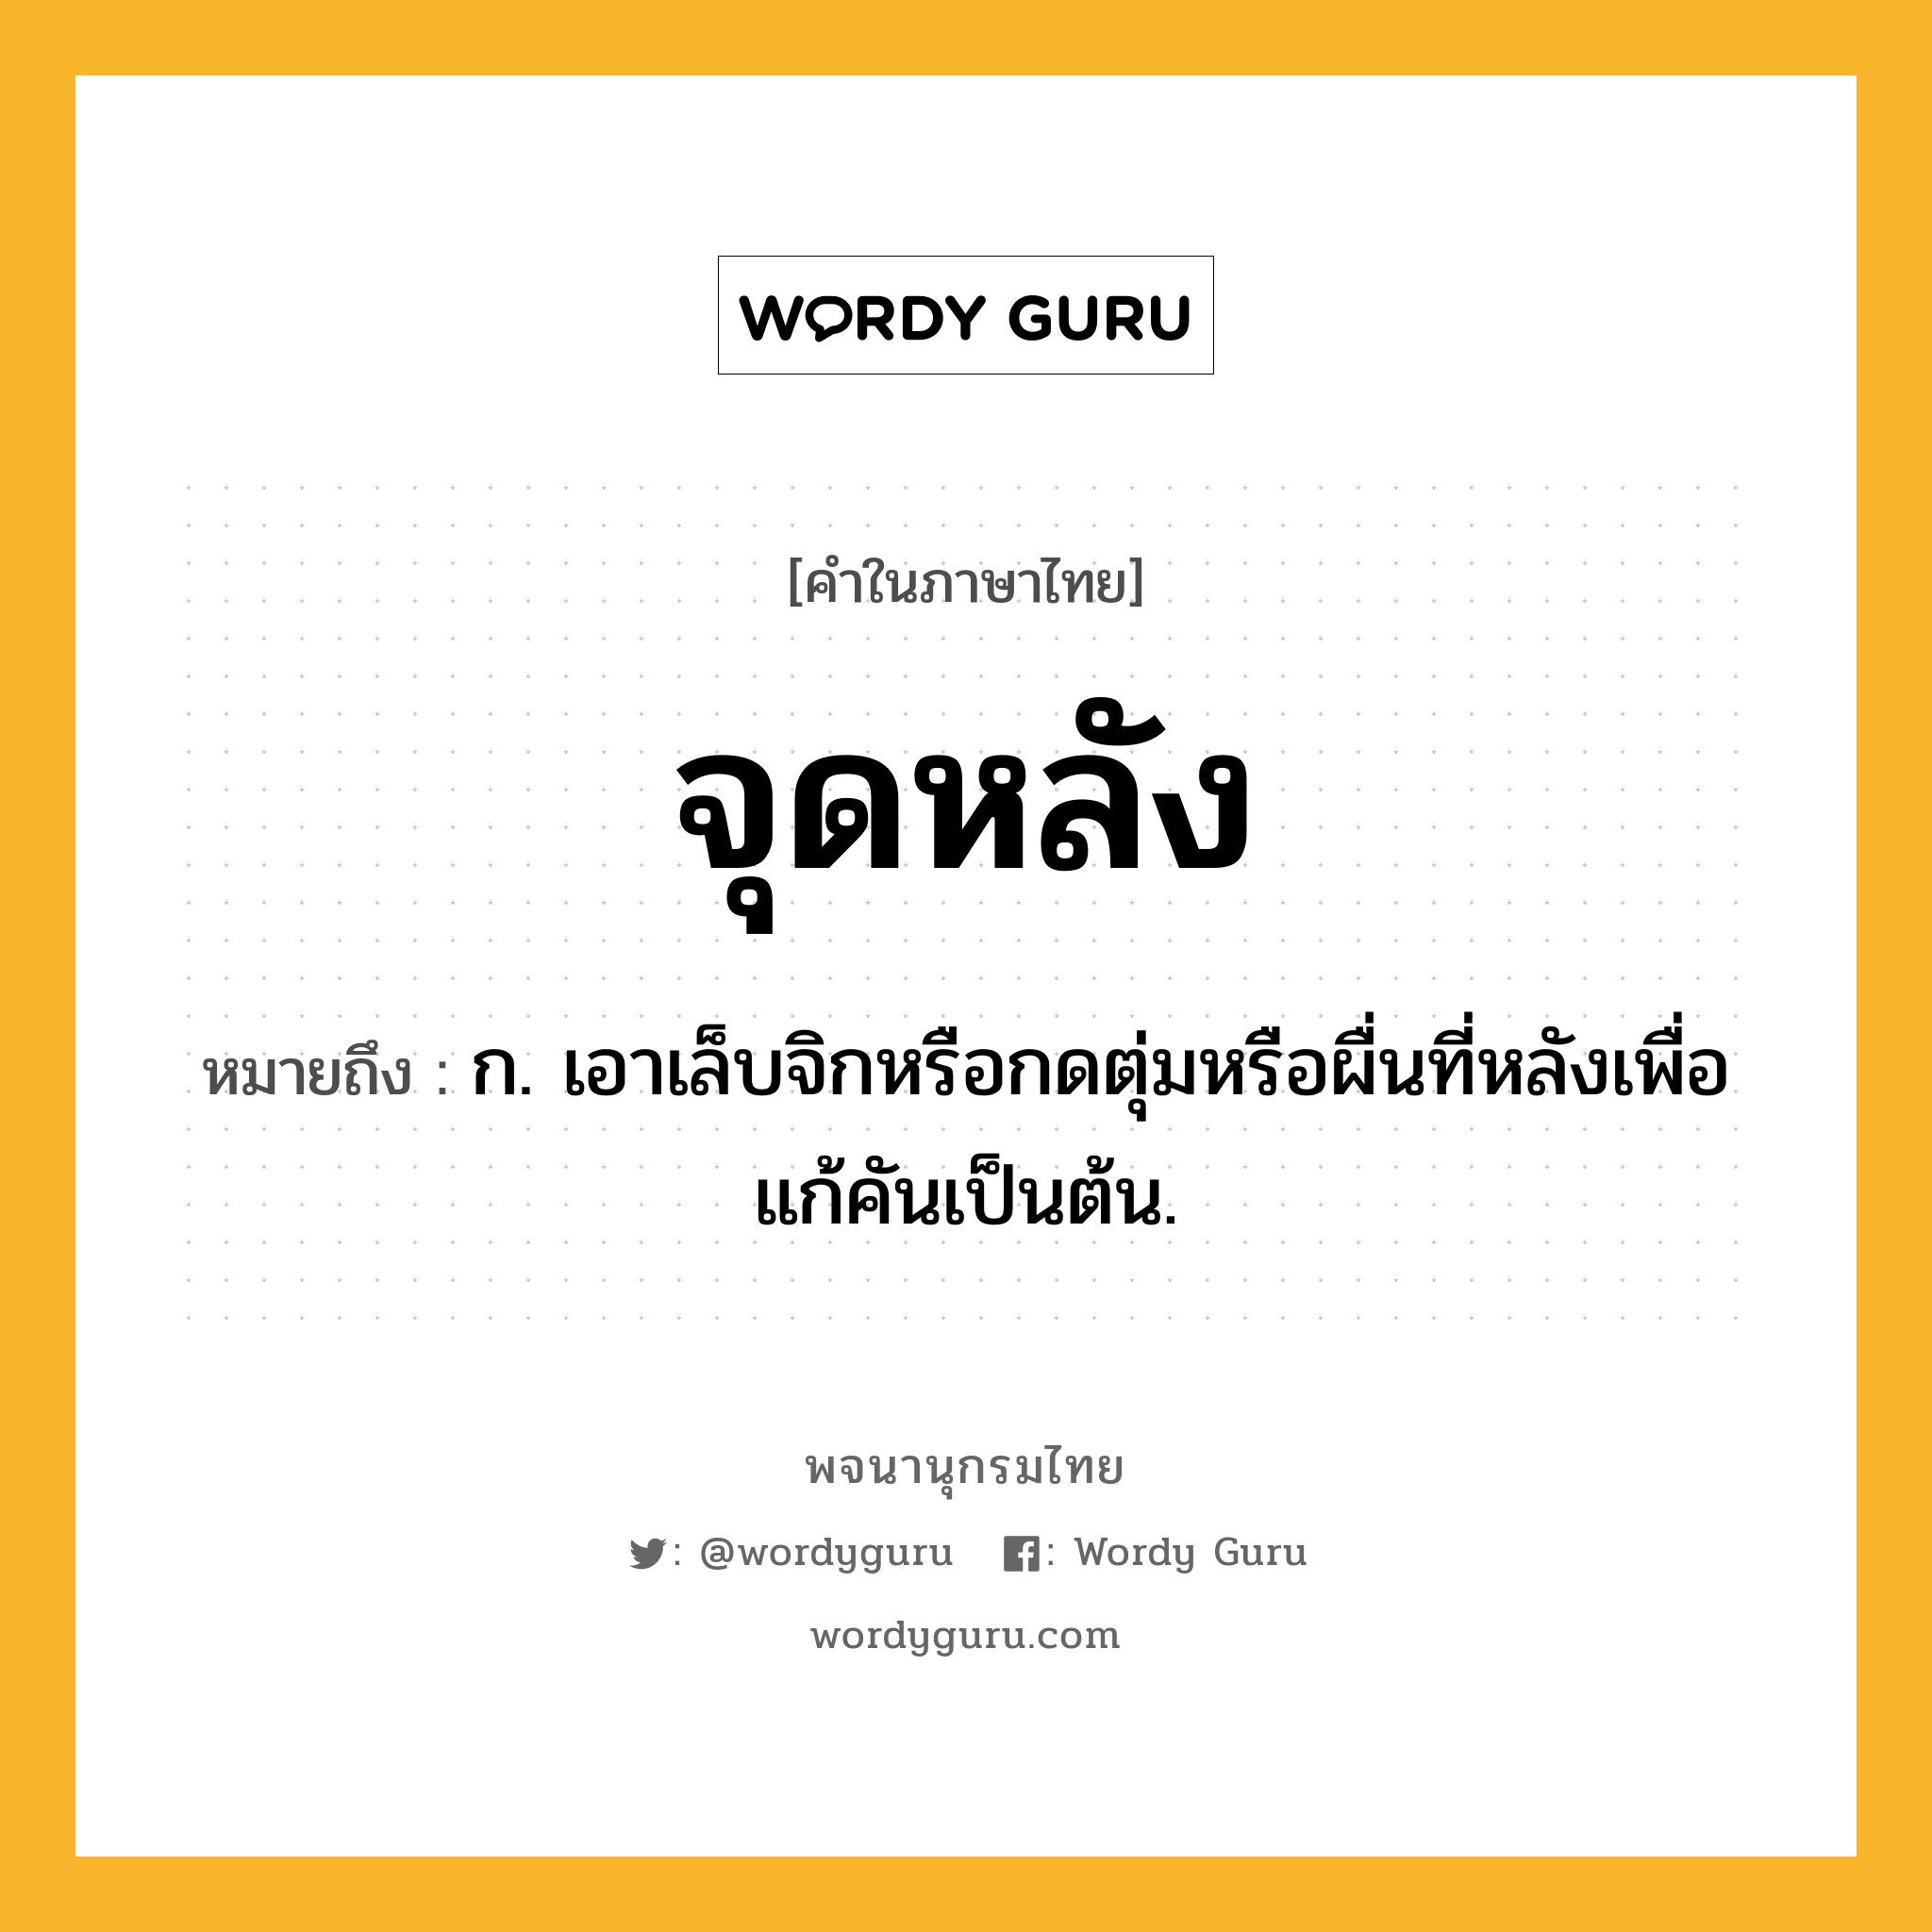 จุดหลัง หมายถึงอะไร?, คำในภาษาไทย จุดหลัง หมายถึง ก. เอาเล็บจิกหรือกดตุ่มหรือผื่นที่หลังเพื่อแก้คันเป็นต้น.